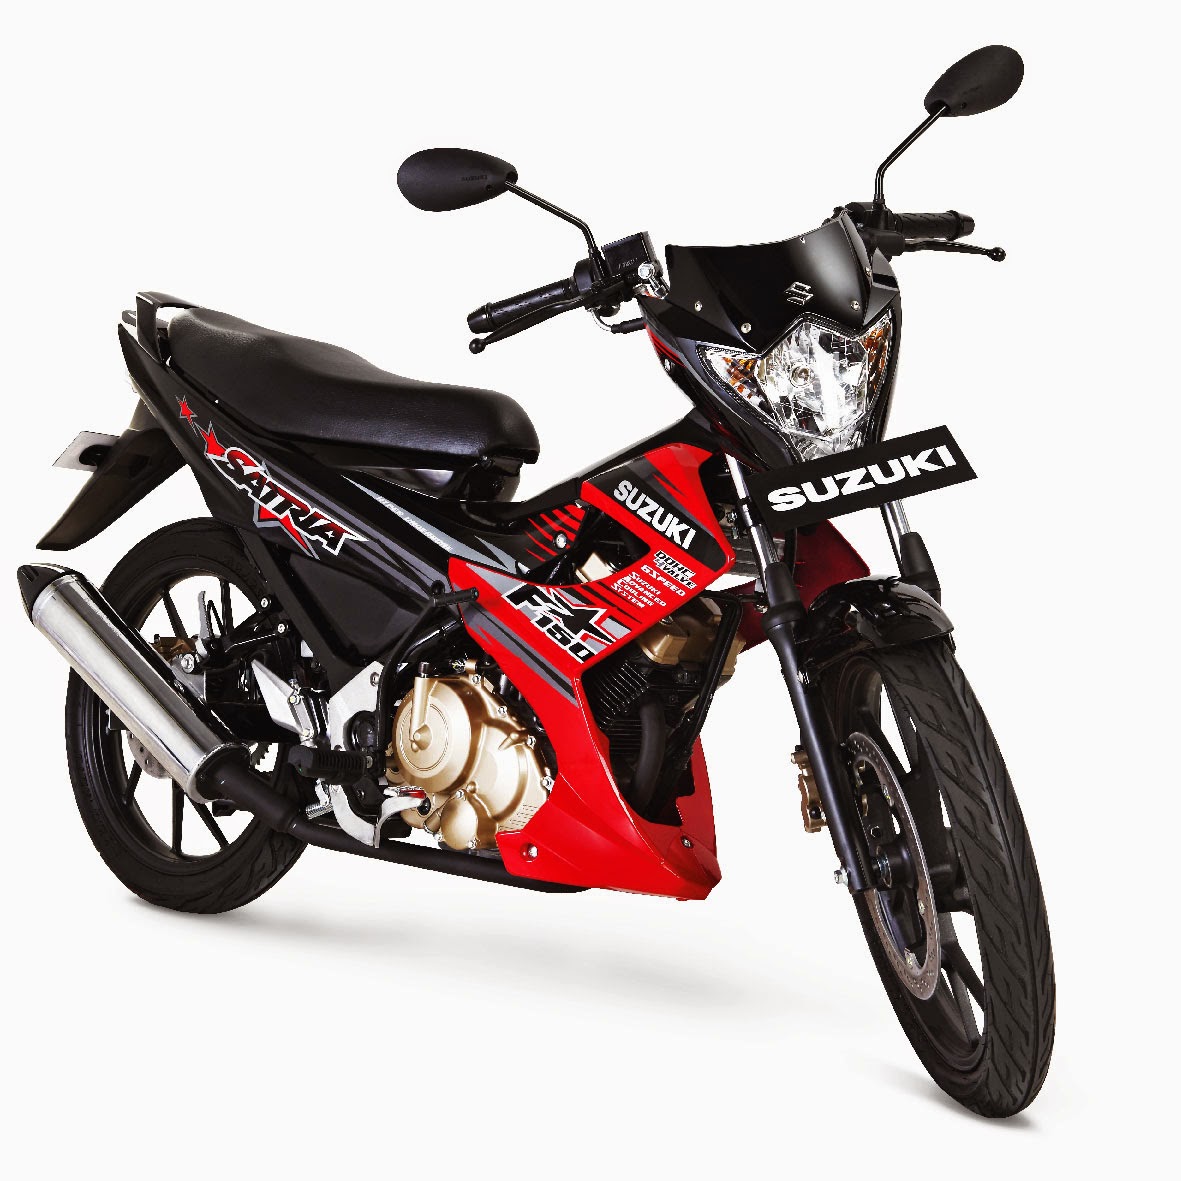 Harga Motor Suzuki Satria FU Terbaru Dan Modifikasi Harga Motor